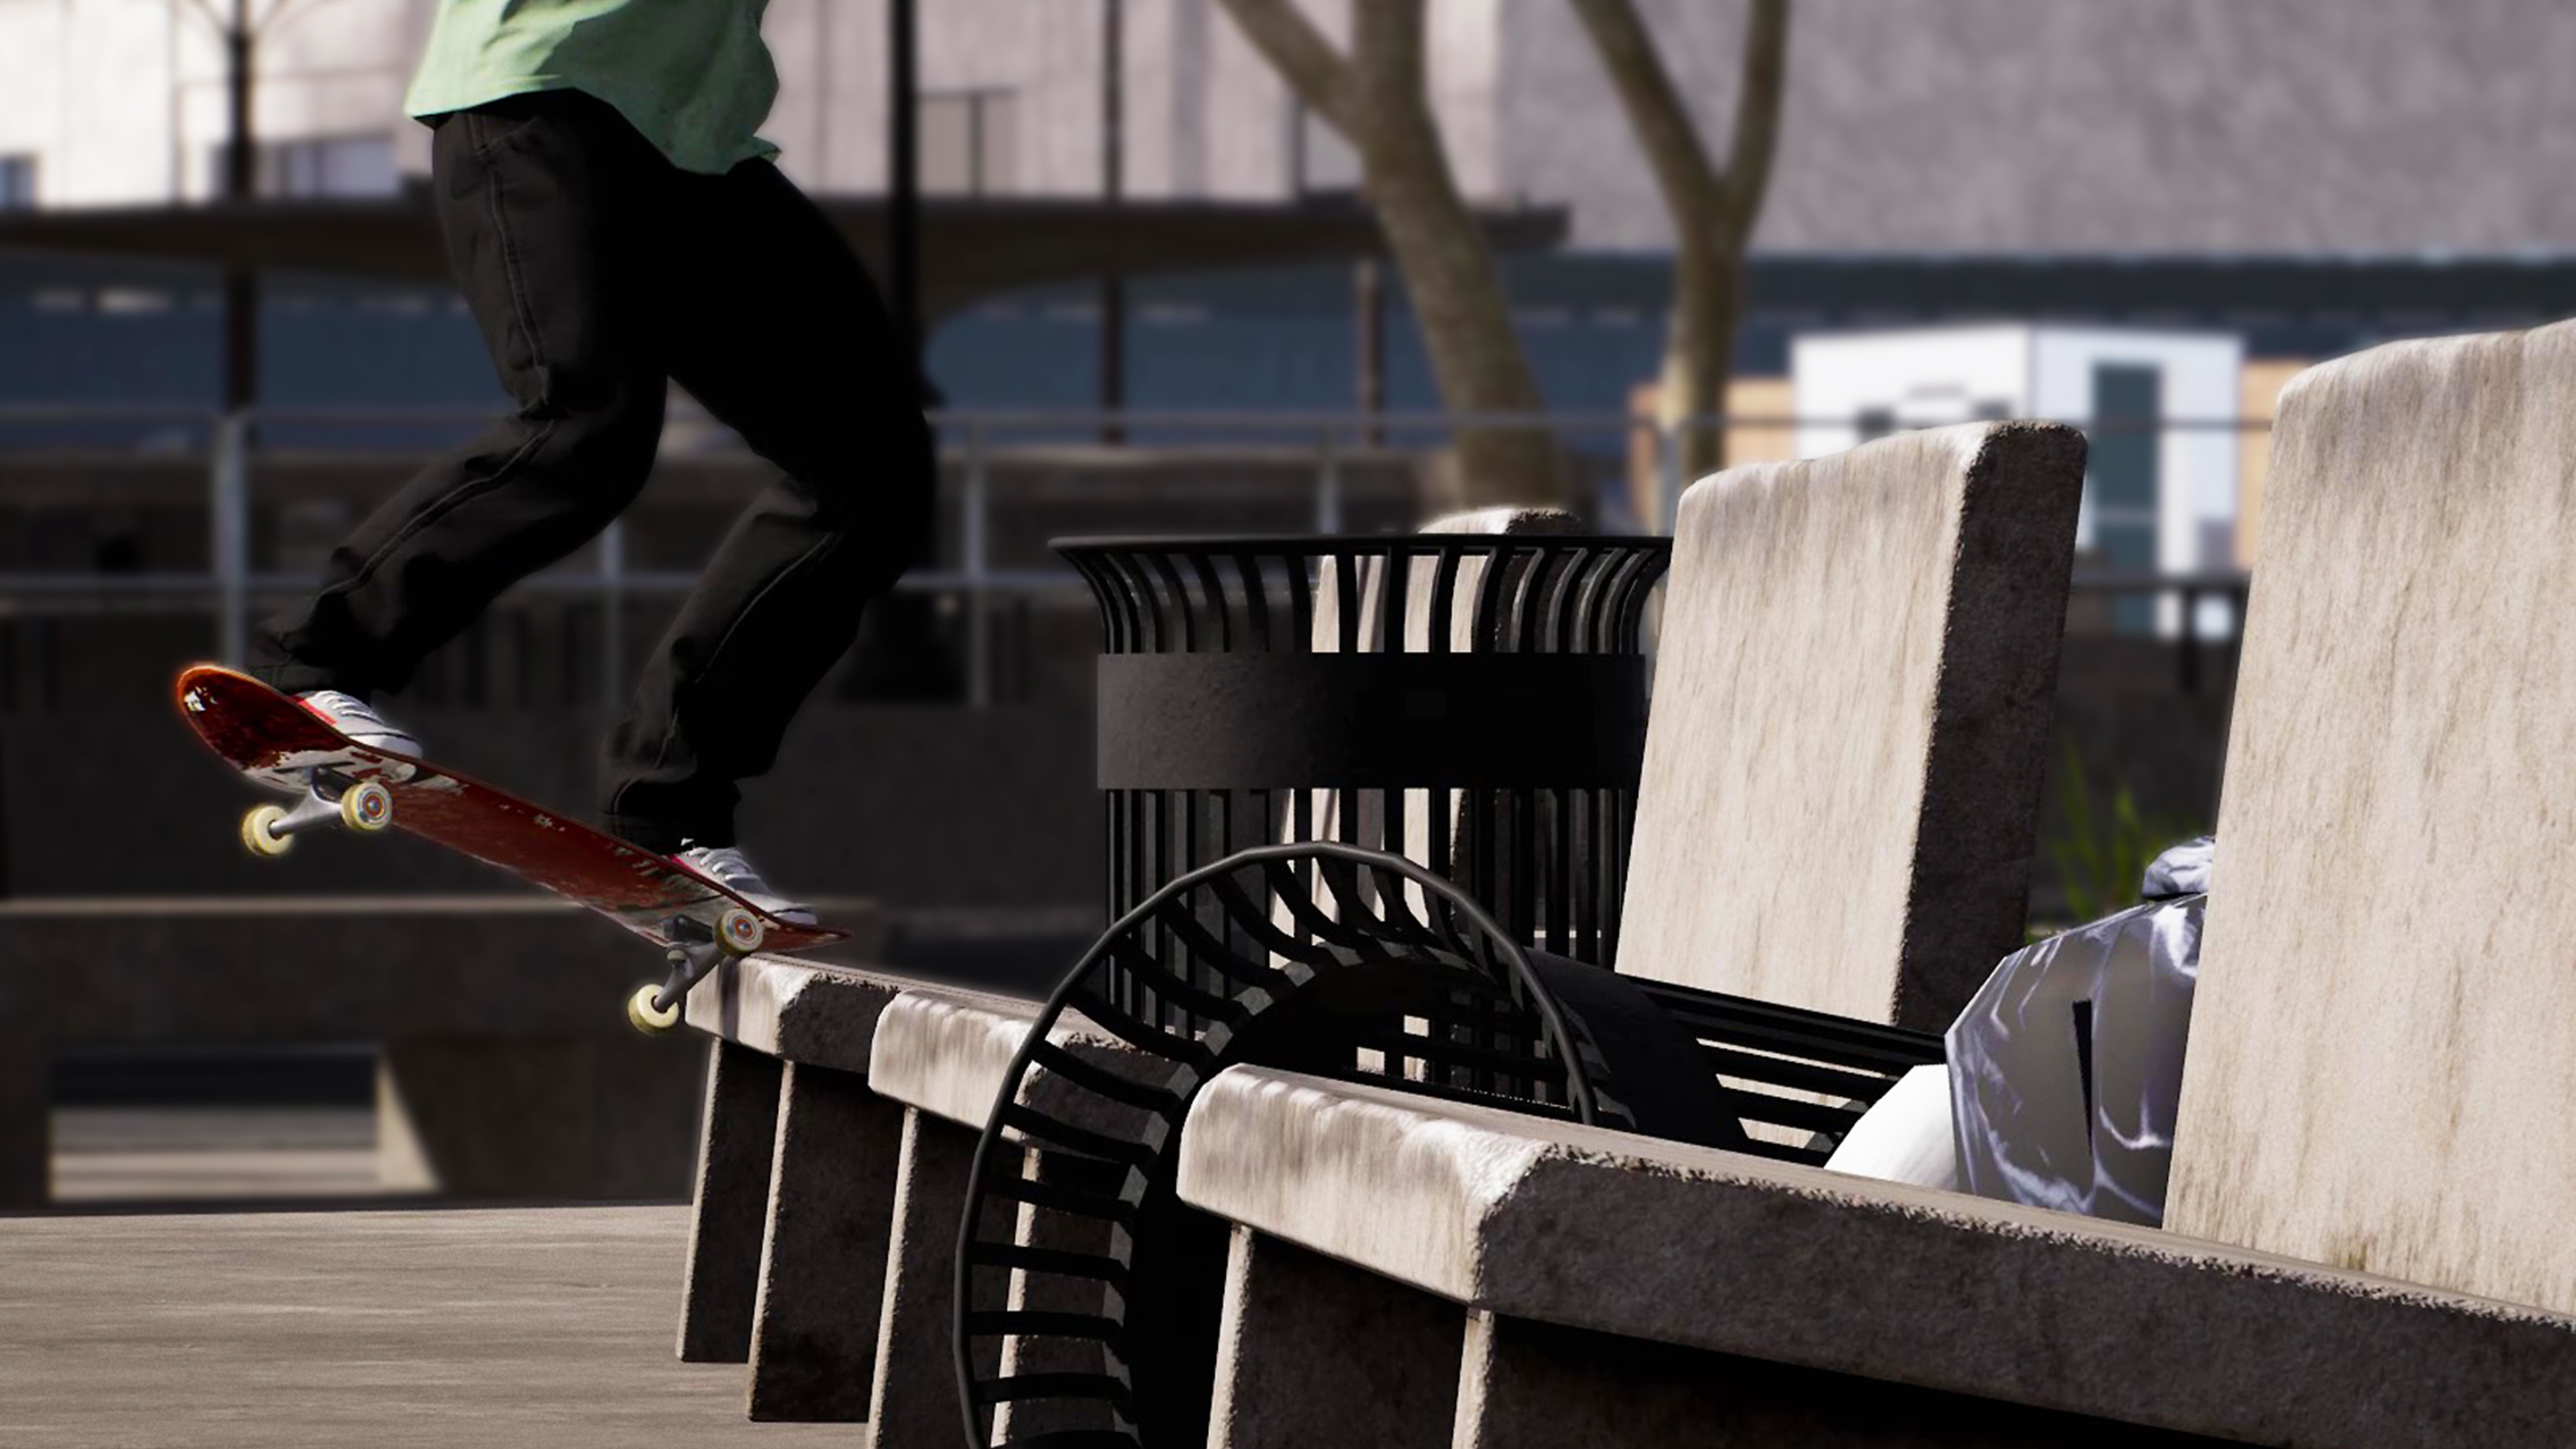 Session: Skate Sim - Capture d'écran montrant un skateboarder faisant un grind sur un banc